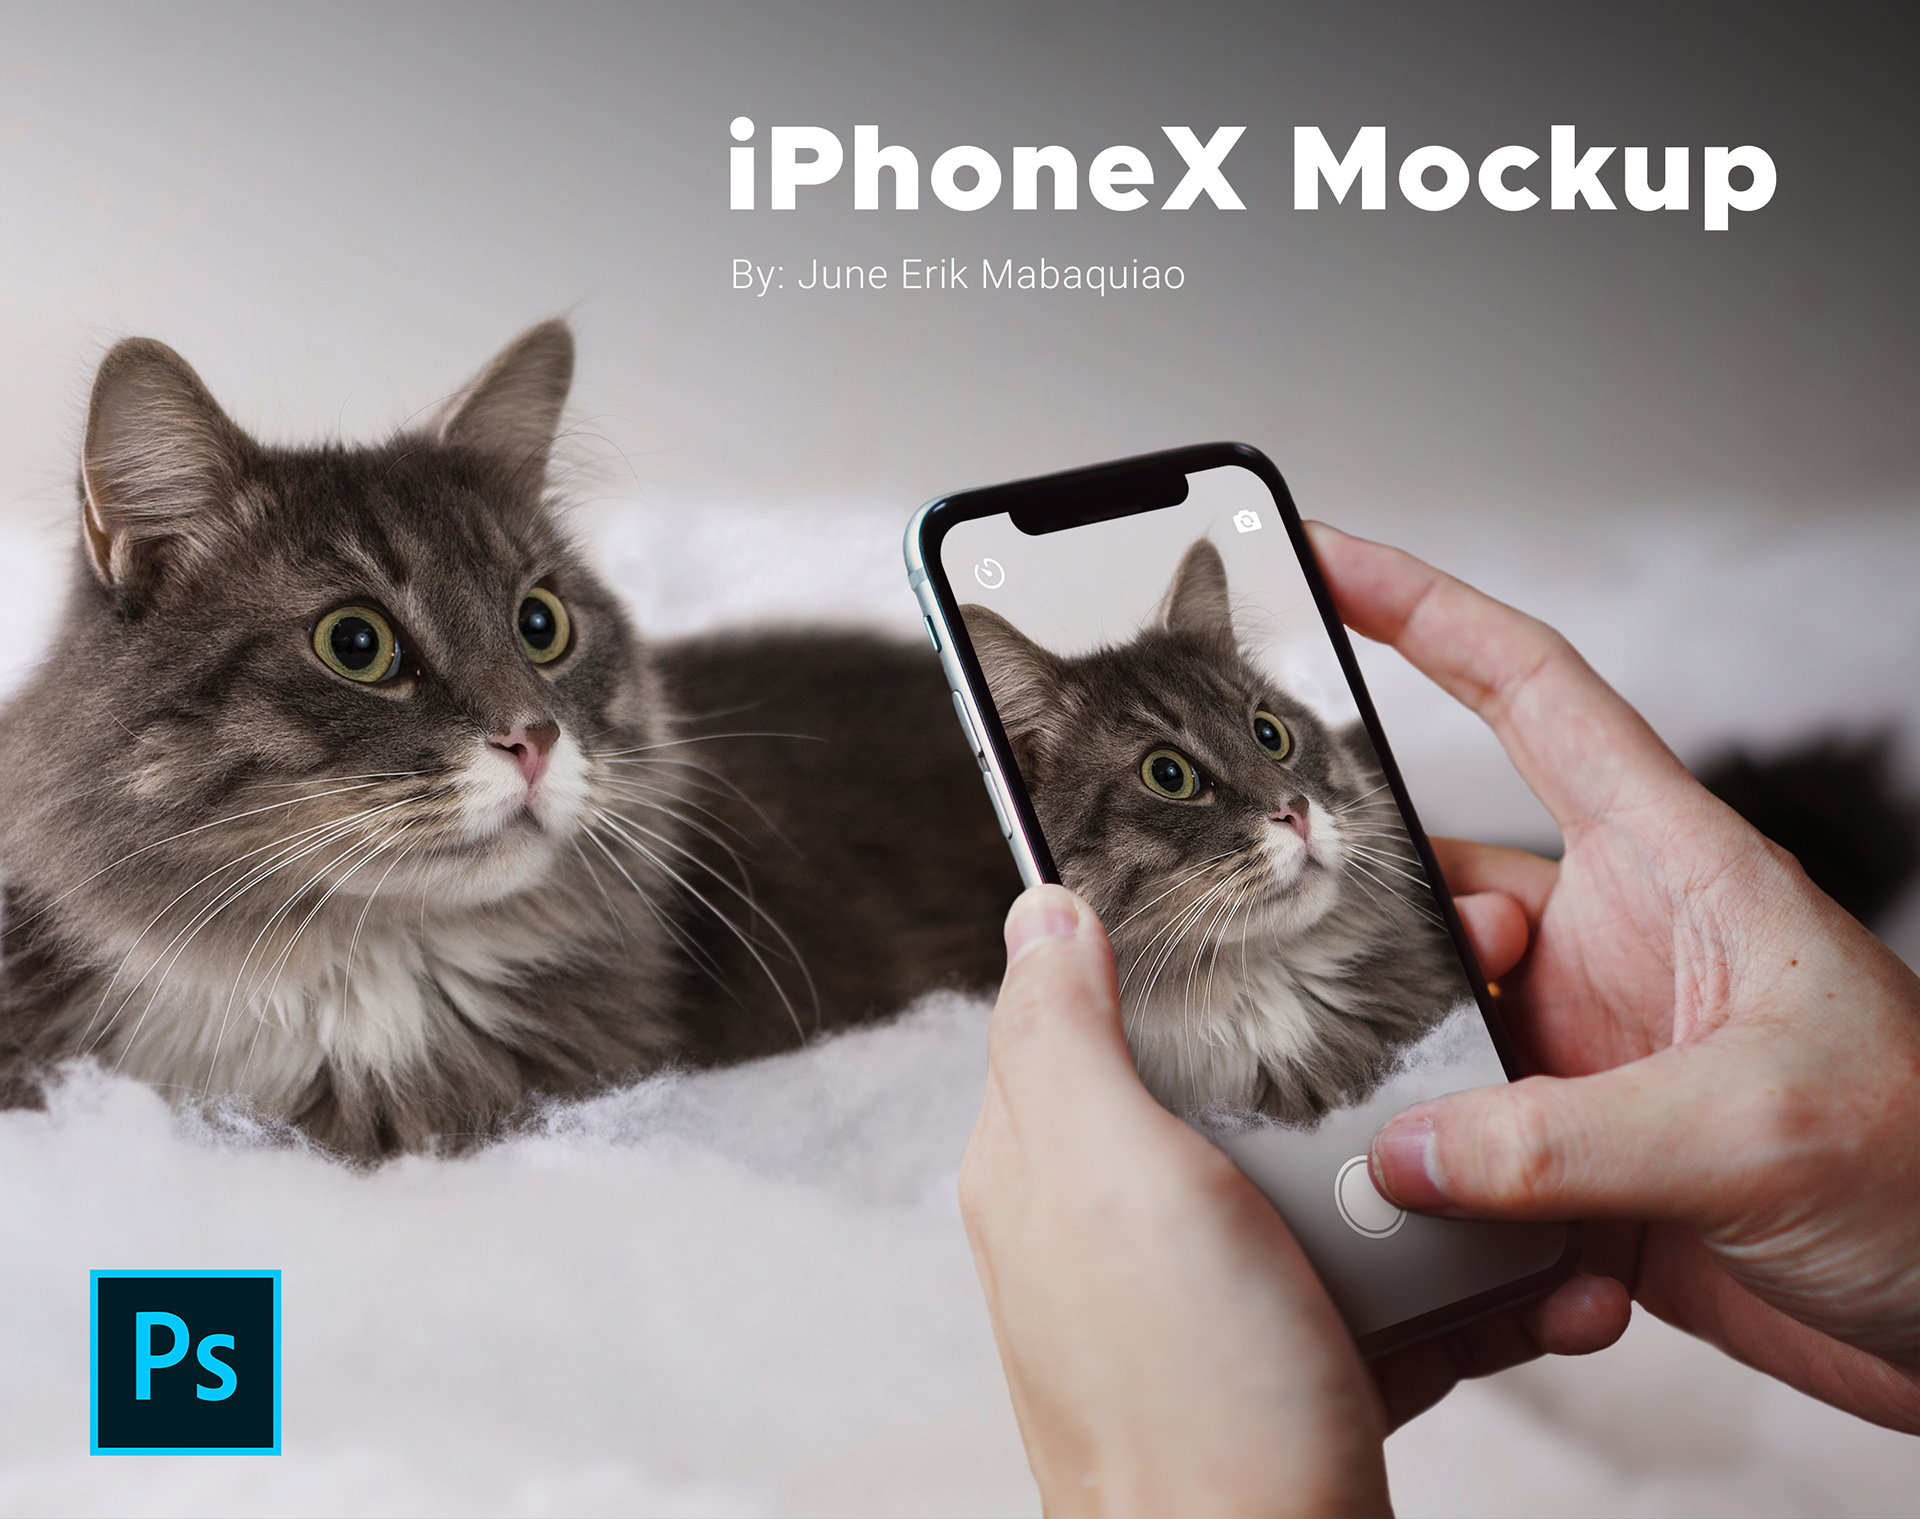 Mockup iPhoneX - PSD Format